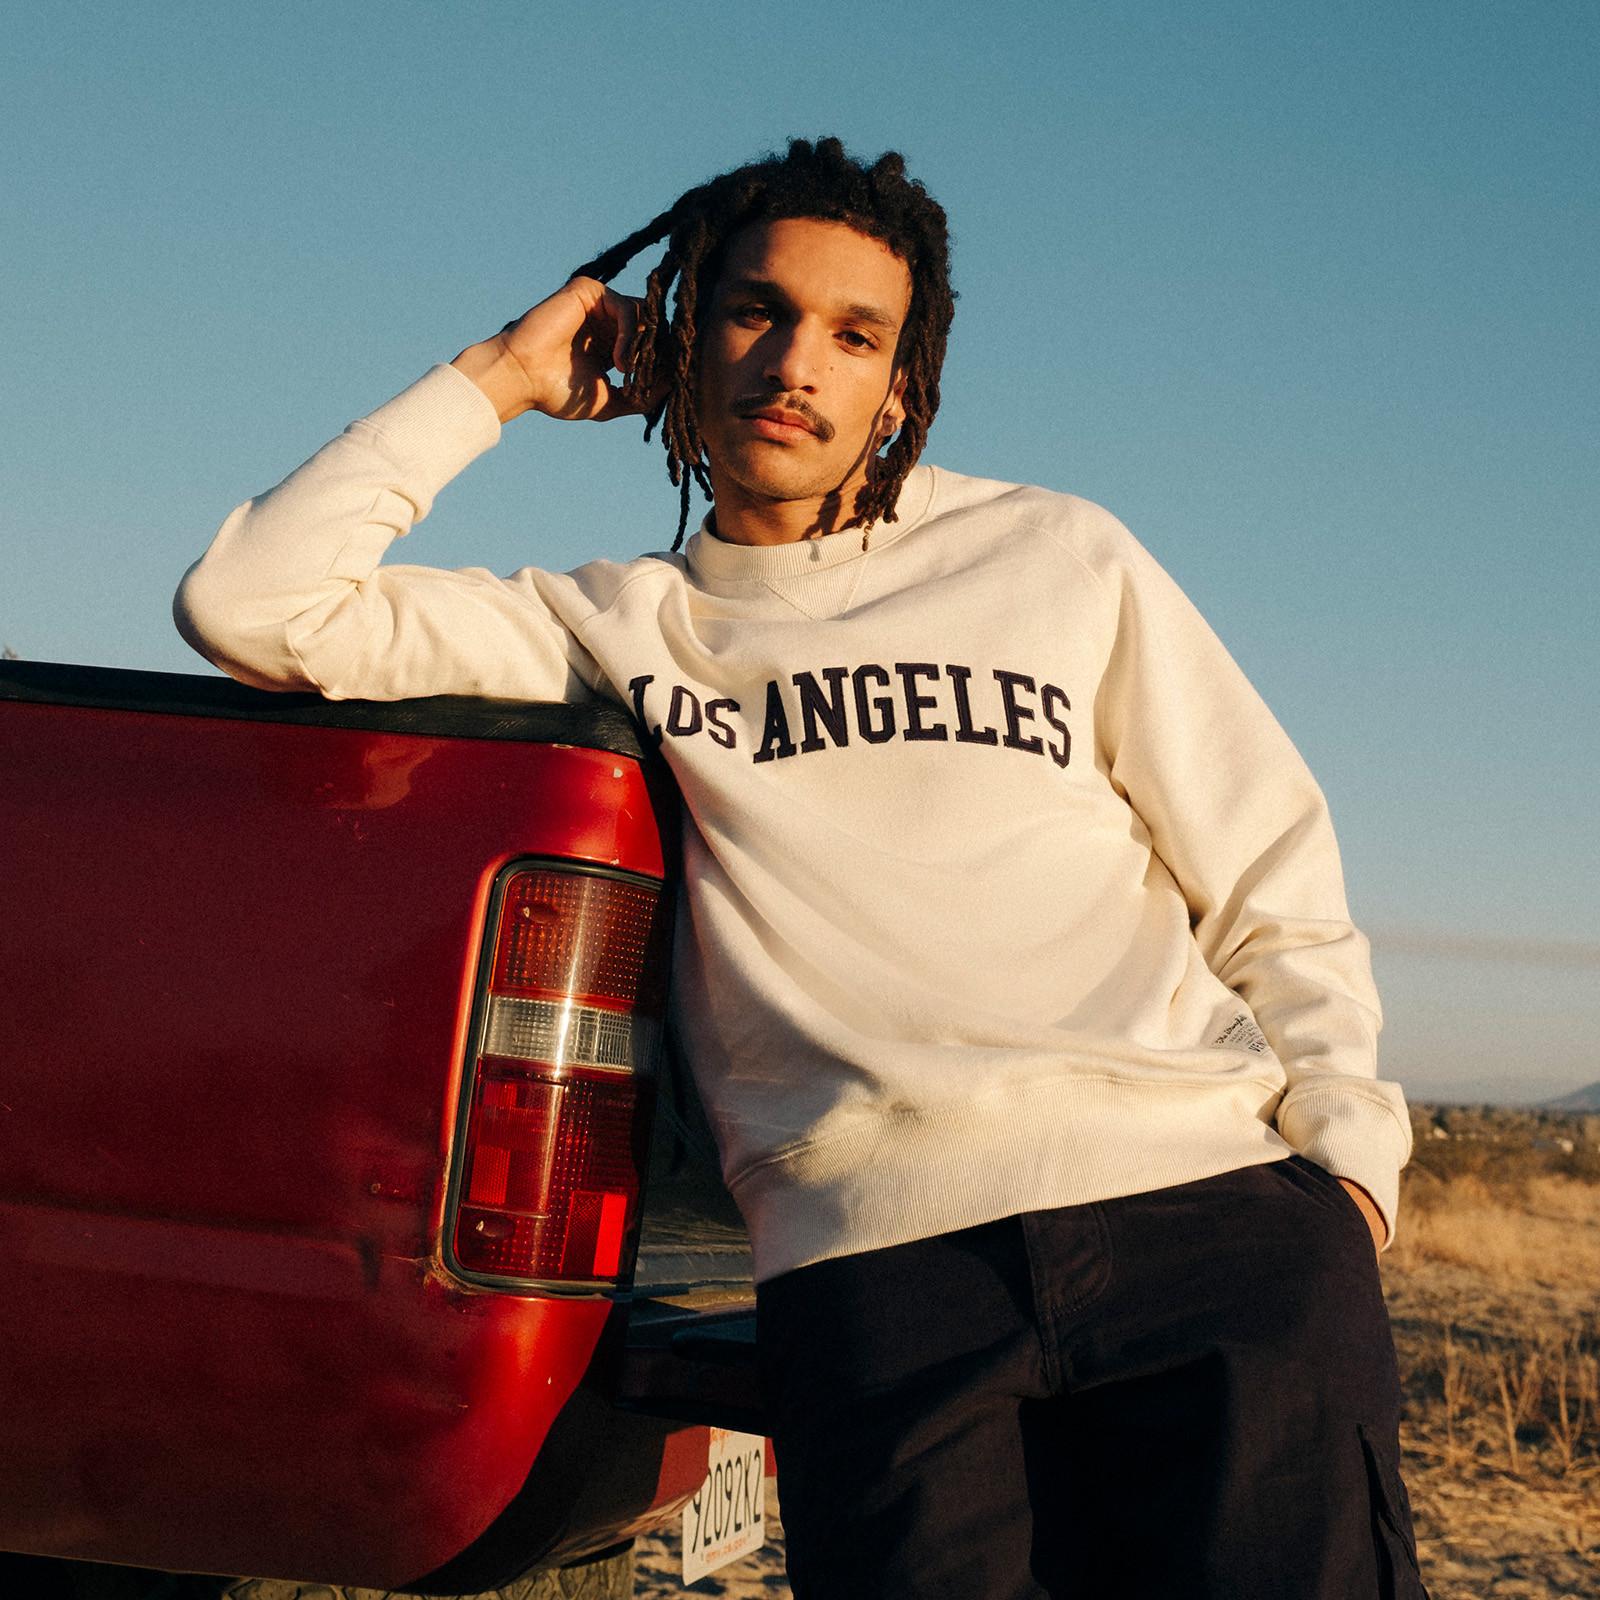 Model wears Los Angeles sweatshirt